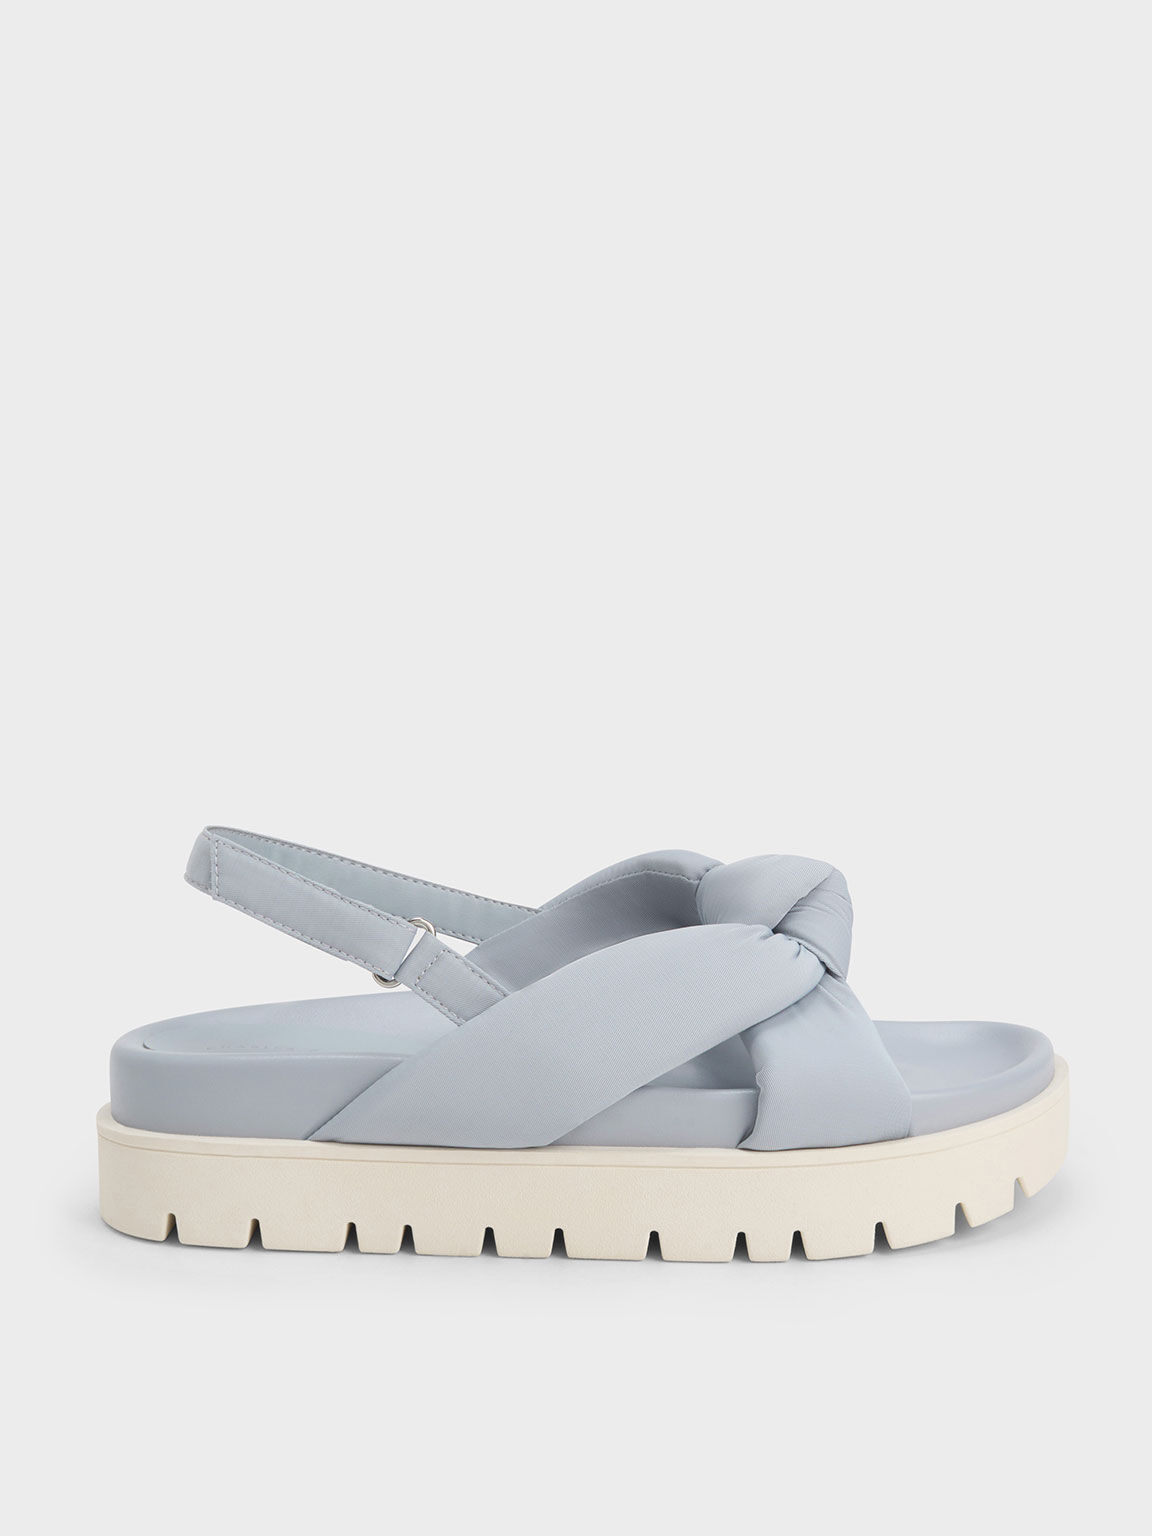 Nylon Knotted Flatform Sandals, Light Blue, hi-res